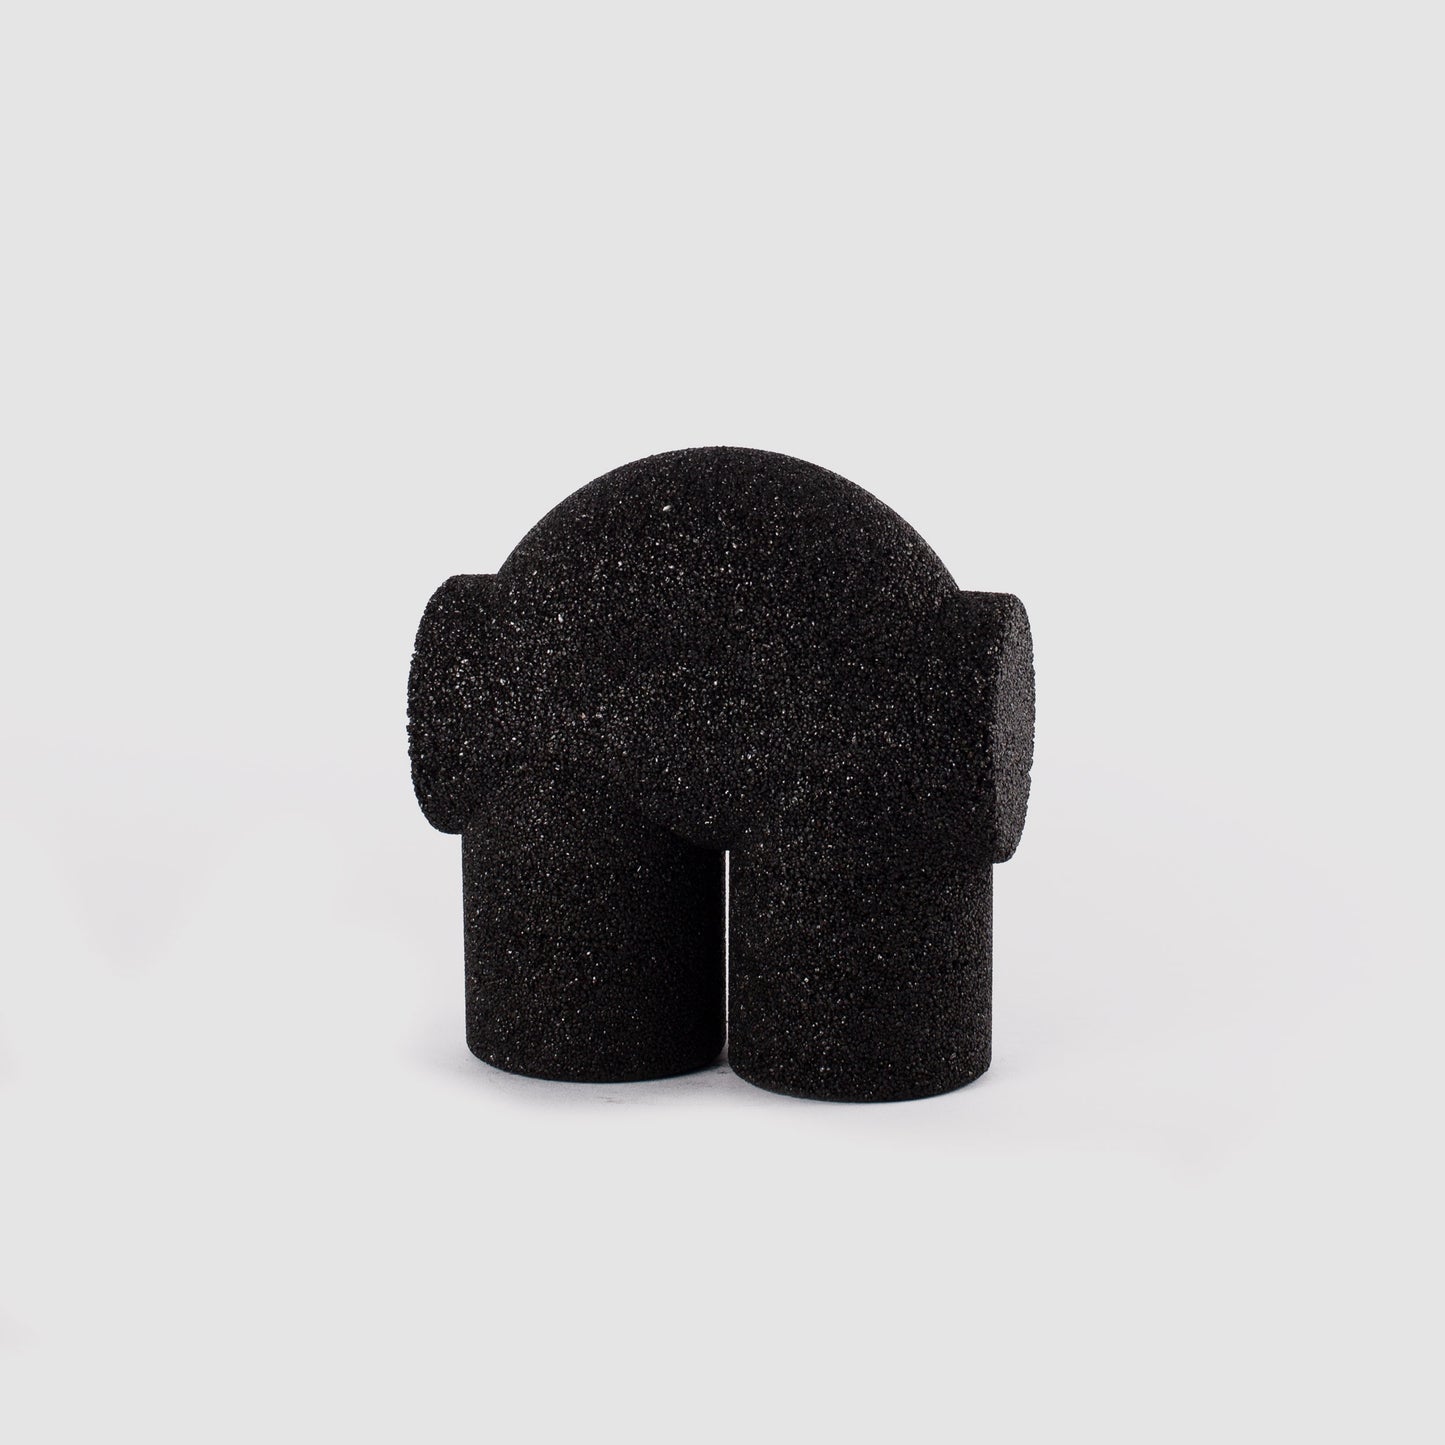 Two-legged gravel object BLACK